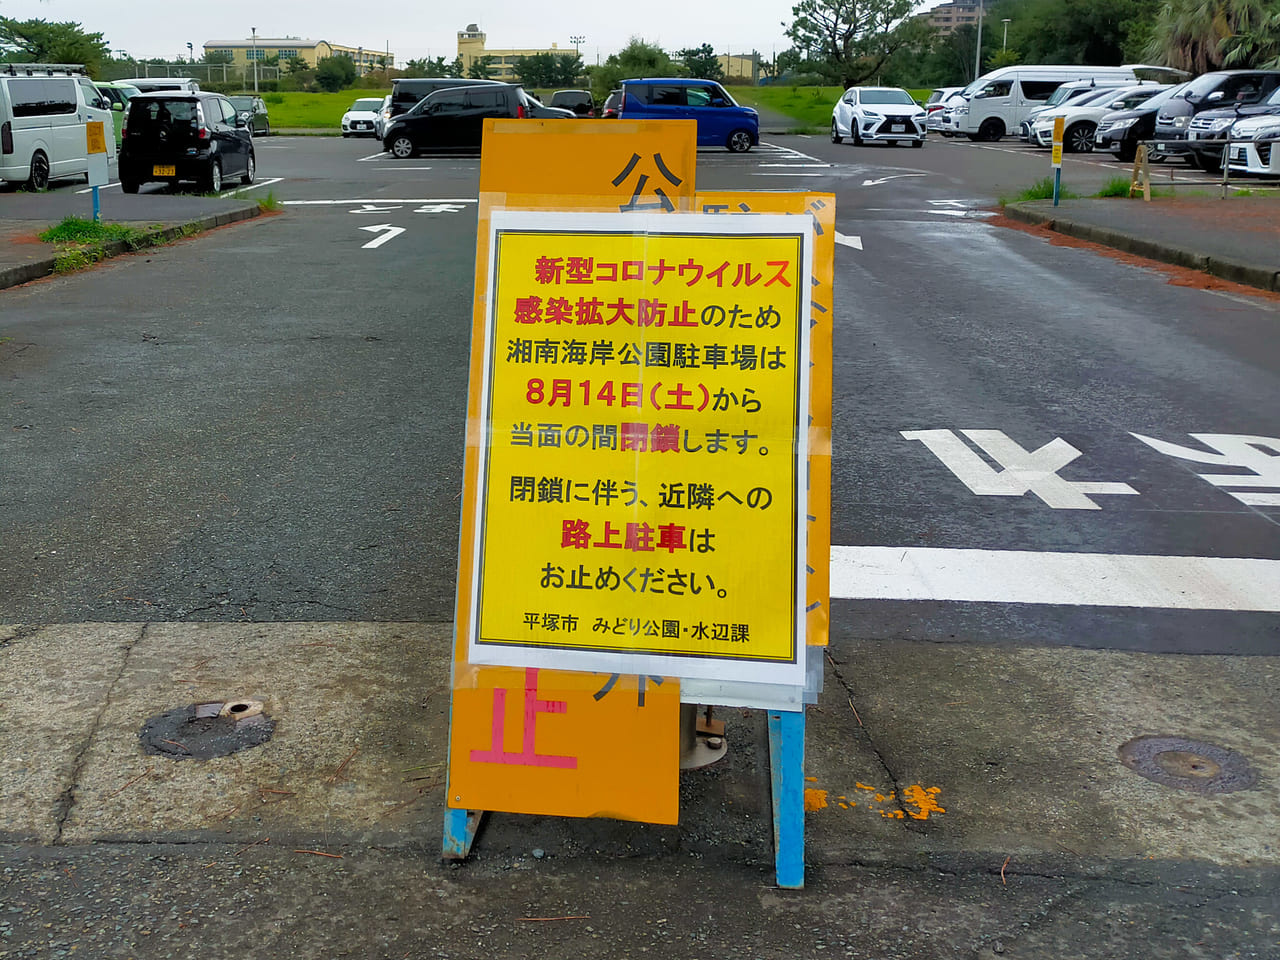 8月14日（土）から31日（火）まで海岸エリアの駐車場が閉鎖されます。